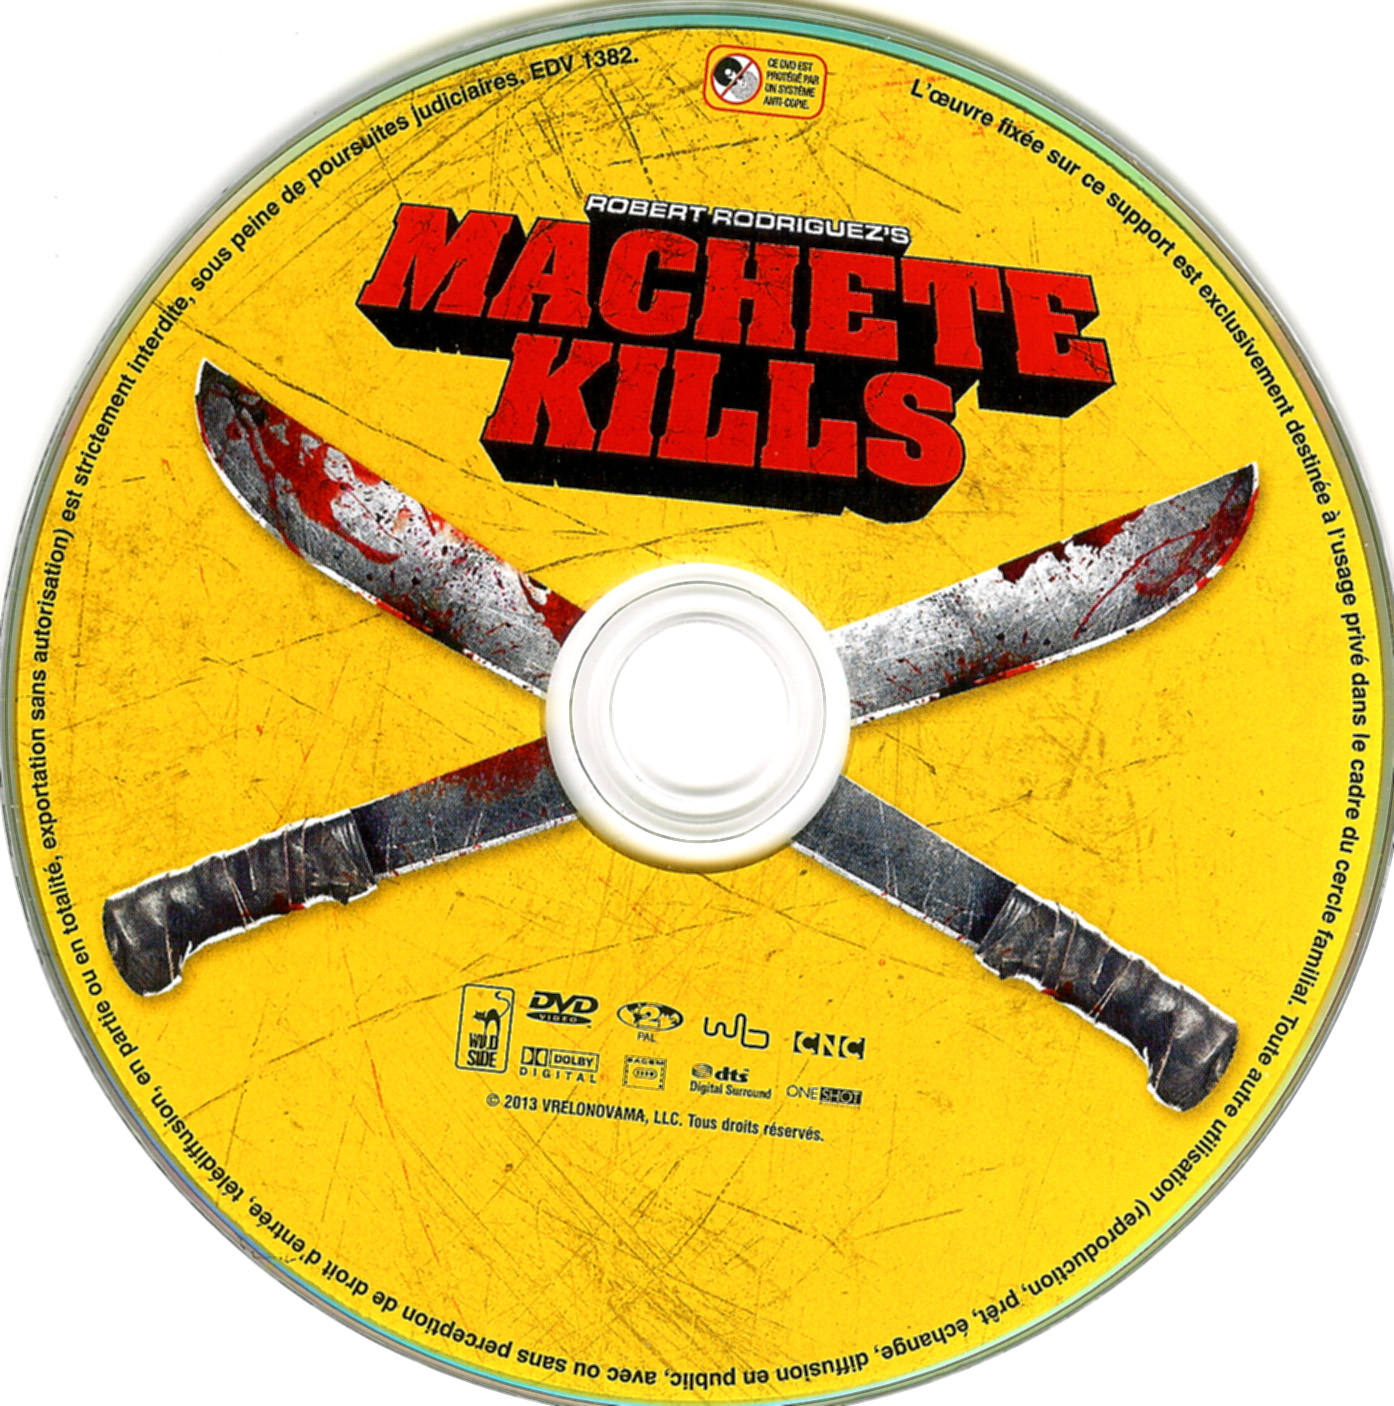 Machete kills